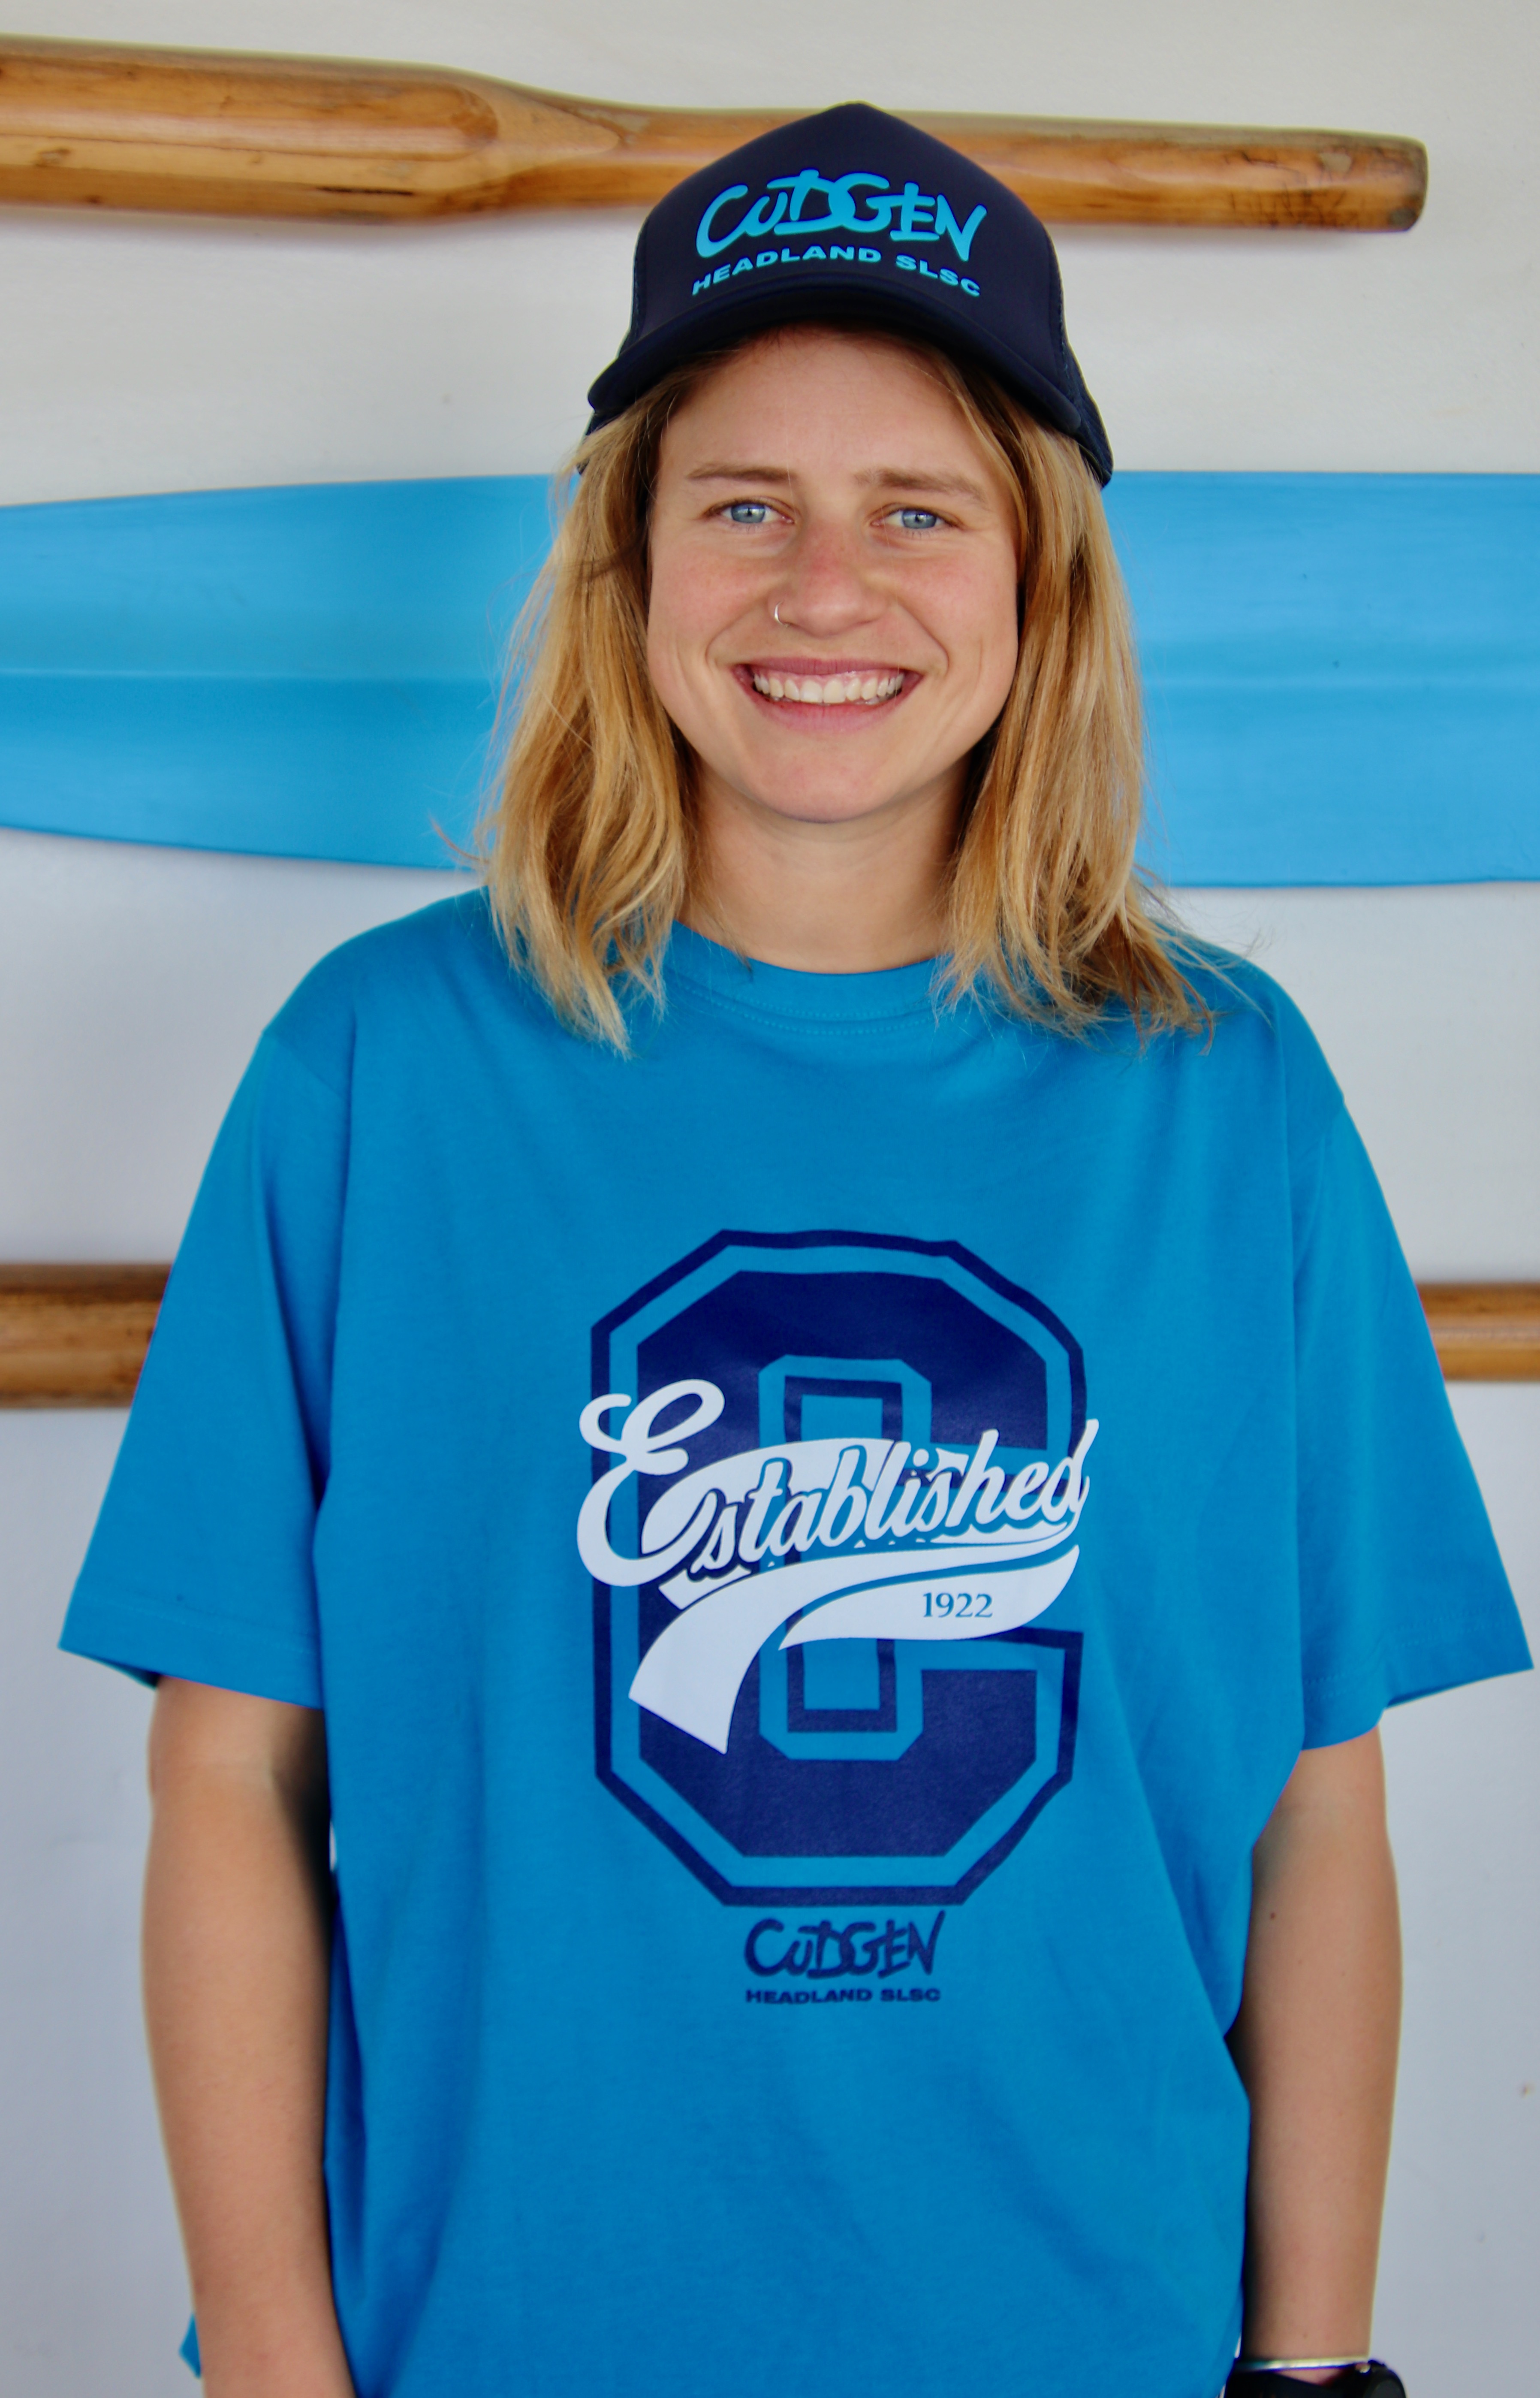 Cudgen Headland Surf Club Merchandise